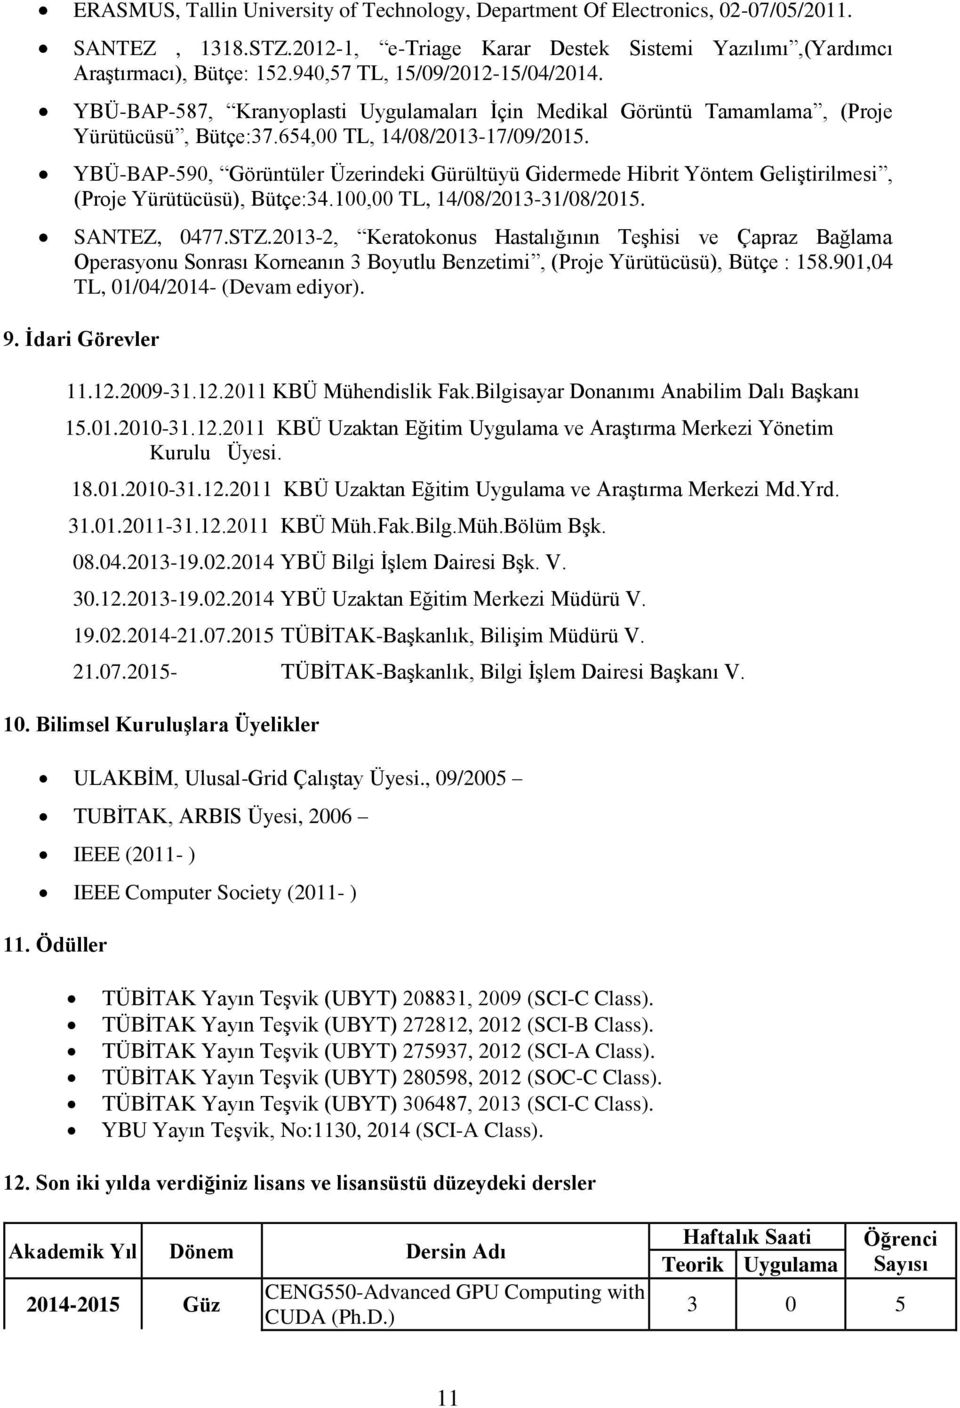 YBÜ-BAP-590, Görüntüler Üzerindeki Gürültüyü Gidermede Hibrit Yöntem Geliştirilmesi, (Proje Yürütücüsü), Bütçe:34.100,00 TL, 14/08/2013-31/08/2015. SANTEZ, 0477.STZ.